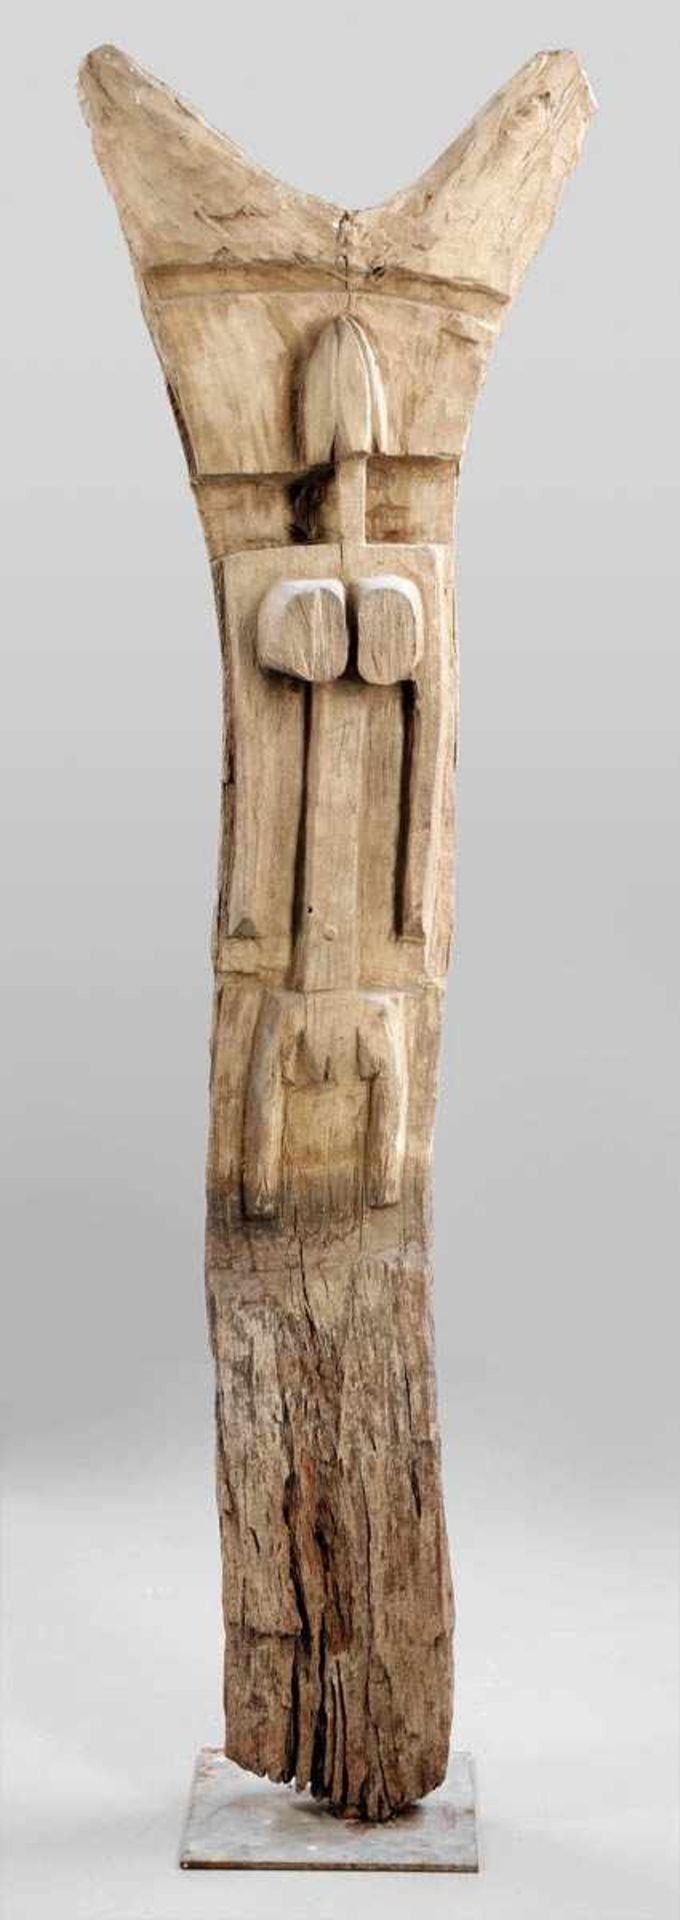 Togu-Na Pfostenskulptur Dogon, Mali um 1900. Holz. 245 x 70 x 40 cm. Der Metallsockel ist aus